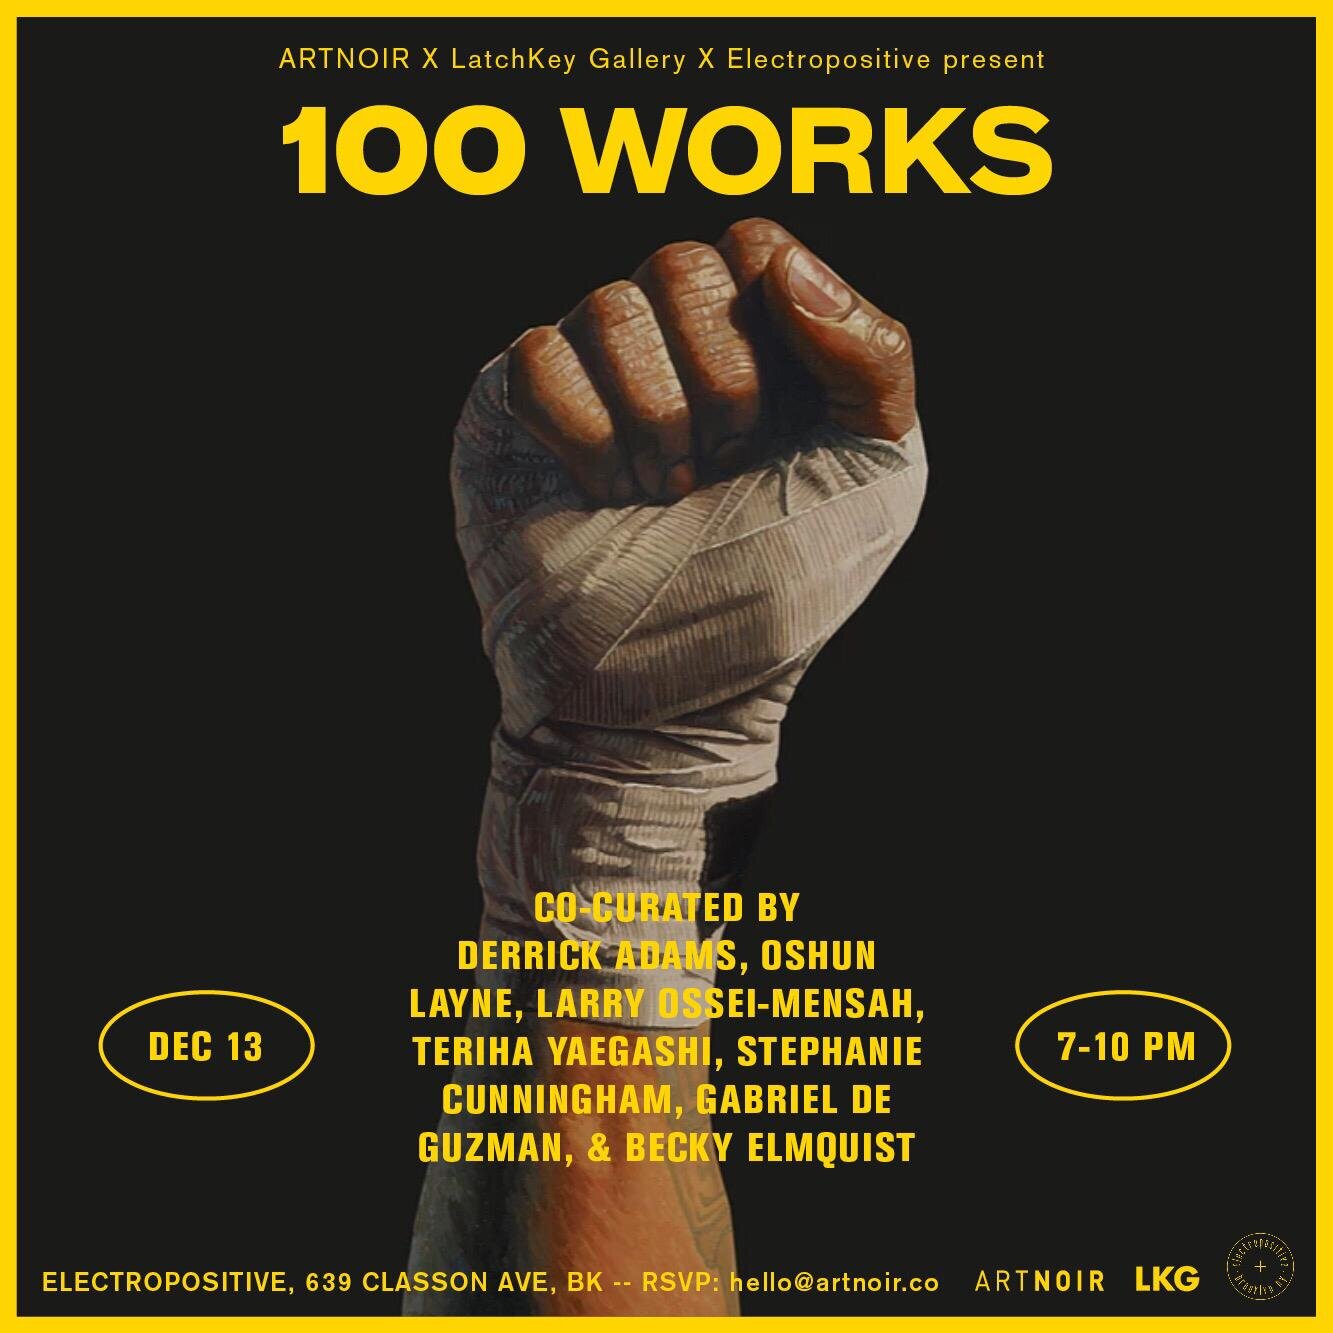 EXHIBITION: 100 WORKS